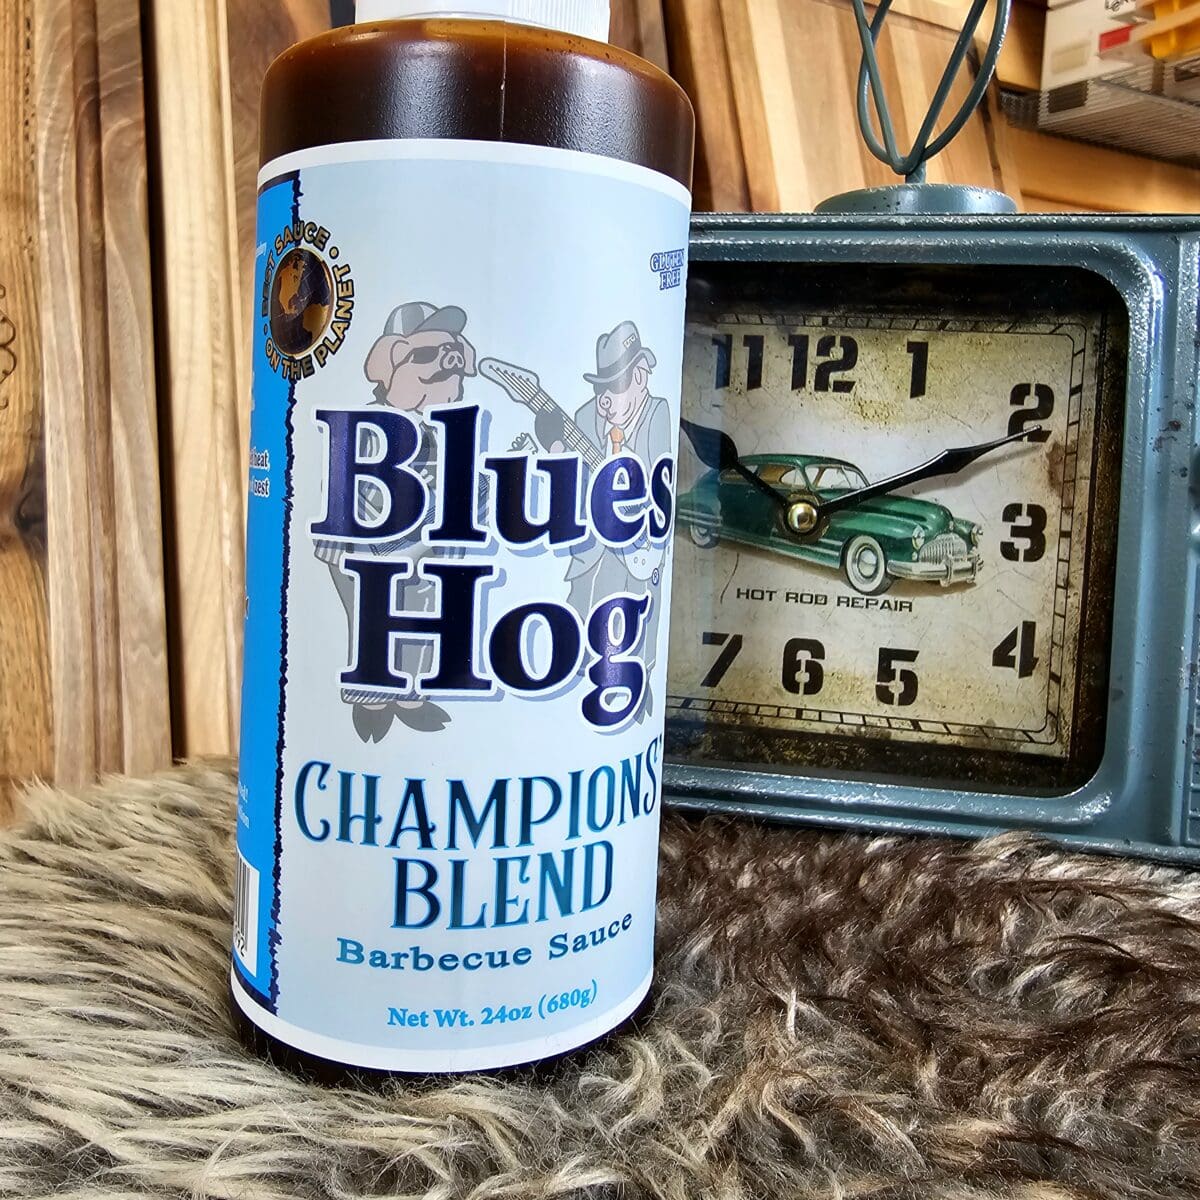 Blues Hog Champions Blend BBQ-sås, perfekt även som glaze - Squeeze flaska! Blues Hog Champions Blend är en högt aktad, rankad och omtalad BBQ-sås som även fungerar utmärkt som glaze. Såsen komponerades av legenden Bill Arnold och används flitigt av tävlande pitmasters och kockar över hela världen, jo det är sant, heeelaaa jordklotet faktiskt. Provsmakningen sitter fortfarande i munnen när texten skrivs och faktum är att spottkörtlarna producerar saliv och smaklökarna ropar efter mer. Suveränt fin balans i denna sås,  syra och sötma i balans följt av en lätt touch av rök och en omfamnande värme som inte stör utan bara bygger höjd på smakerna. Såsen kommer i squeezeflaska vilket gör att du slipper korkar som kladdar och samtidigt underlättas hanteringen när du skall lägga på glaze på revben - lägg bara en sträng eller två och pensla ut. Denna sås passar bäst till gris (oavsett om vi pratar om ribs eller kotletter) och sötklibbiga, chilistarka kycklingvingar eller andra skinnklädda detaljer från kyckling. Vissa kör den även på nötkött och de Blues Hog Original är även utmärkt som en kall BBQsås direkt på tallriken.